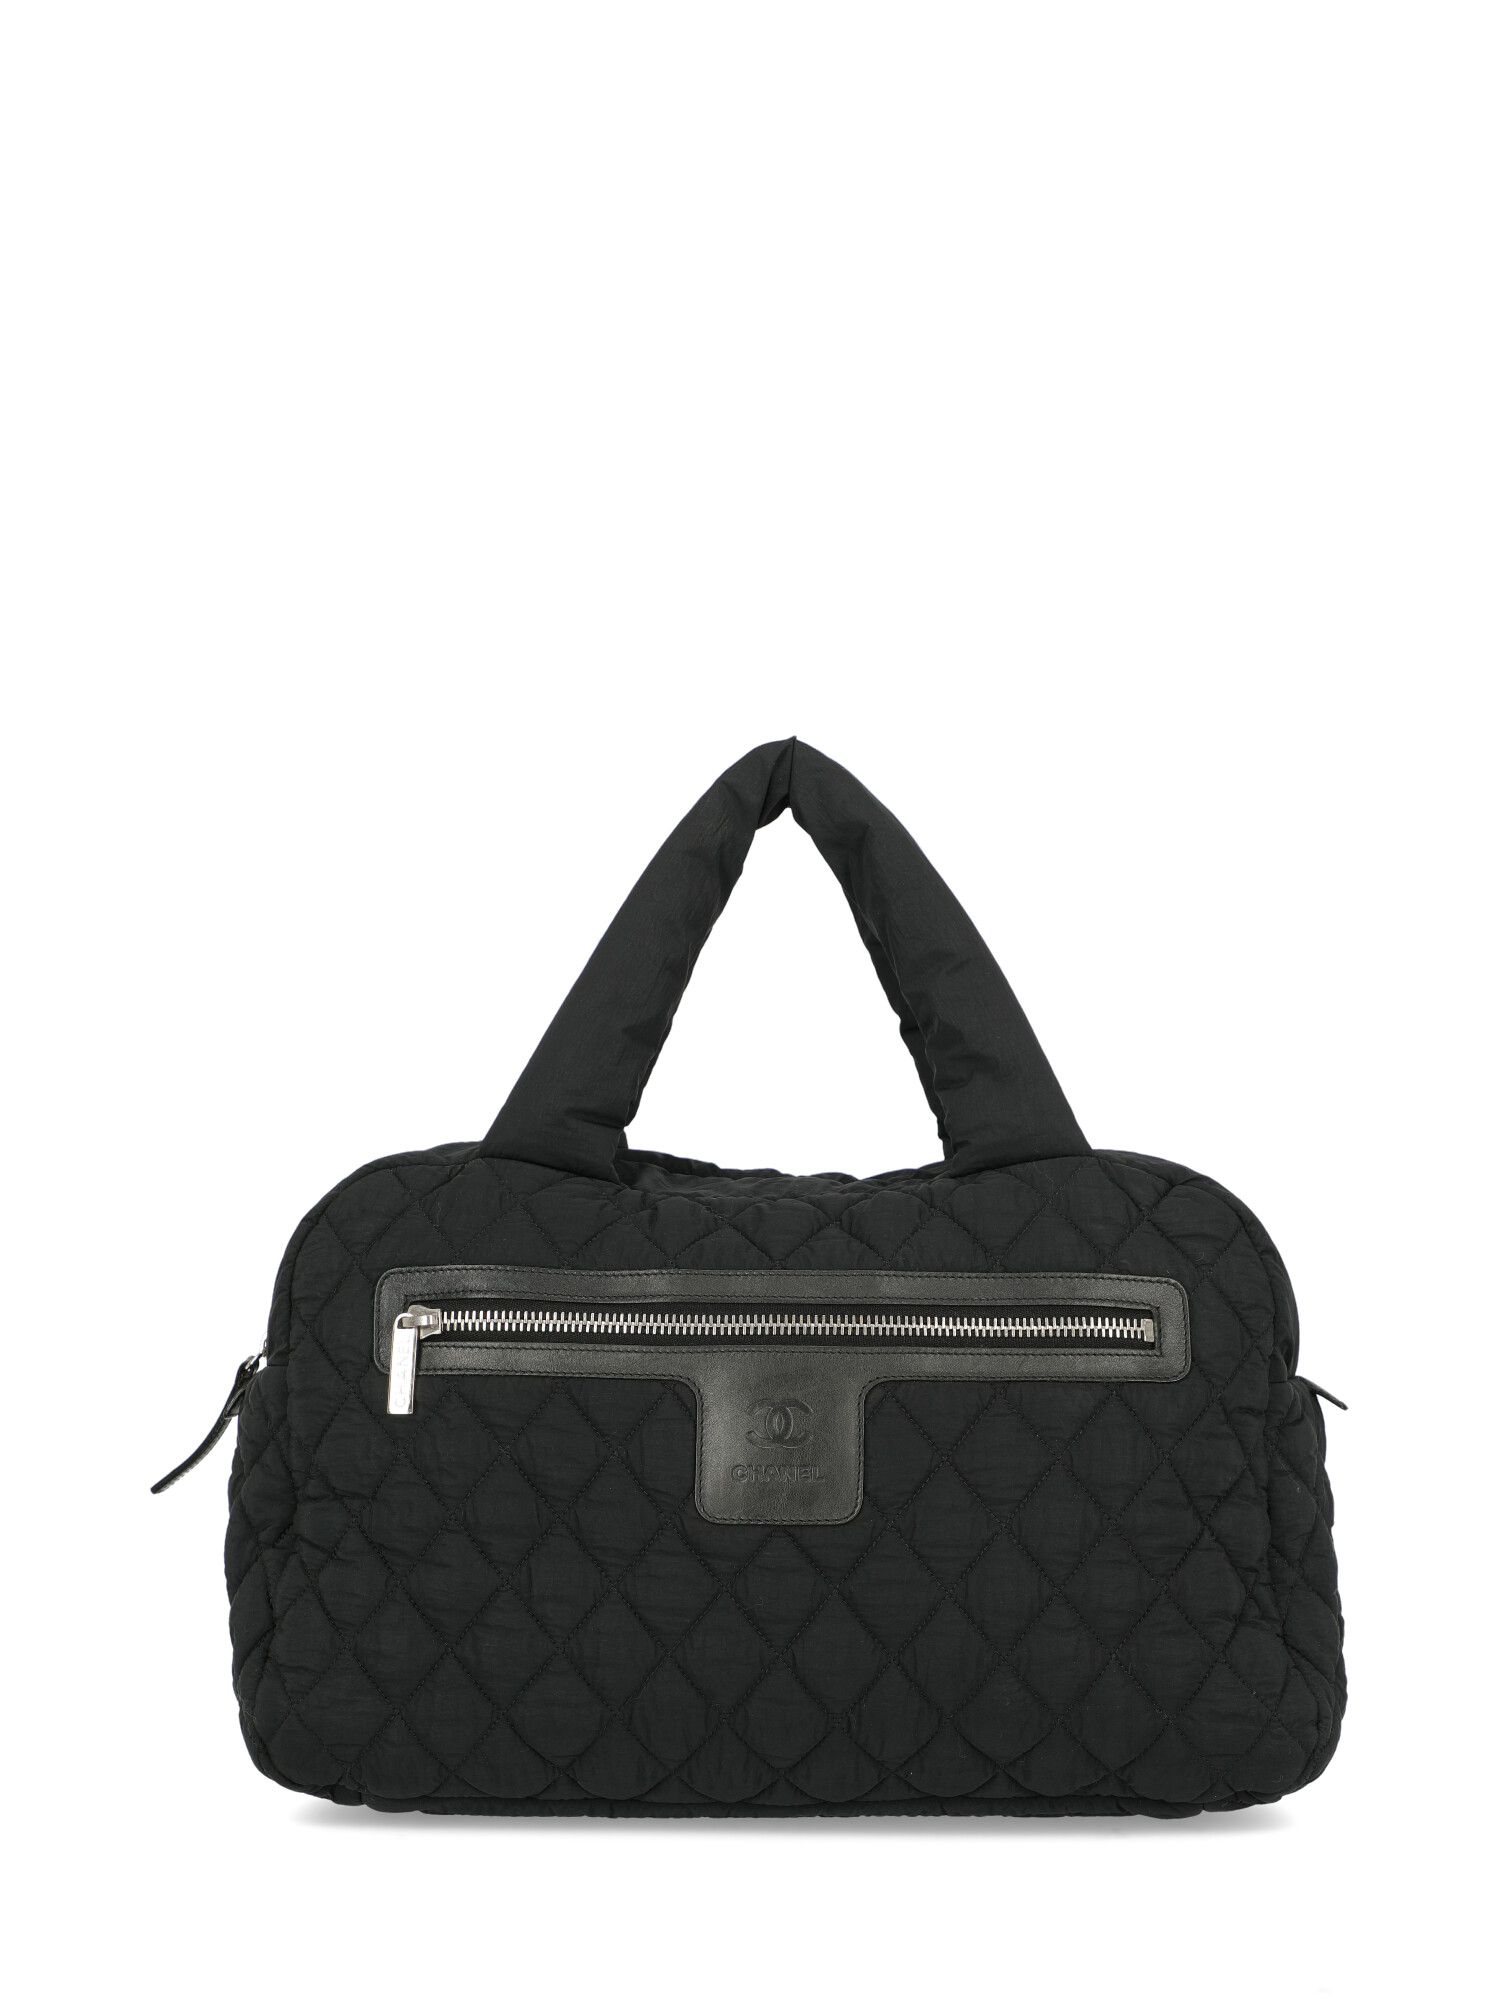 Chanel Special Price Women Handbags Coco Cocoon Black | eBay